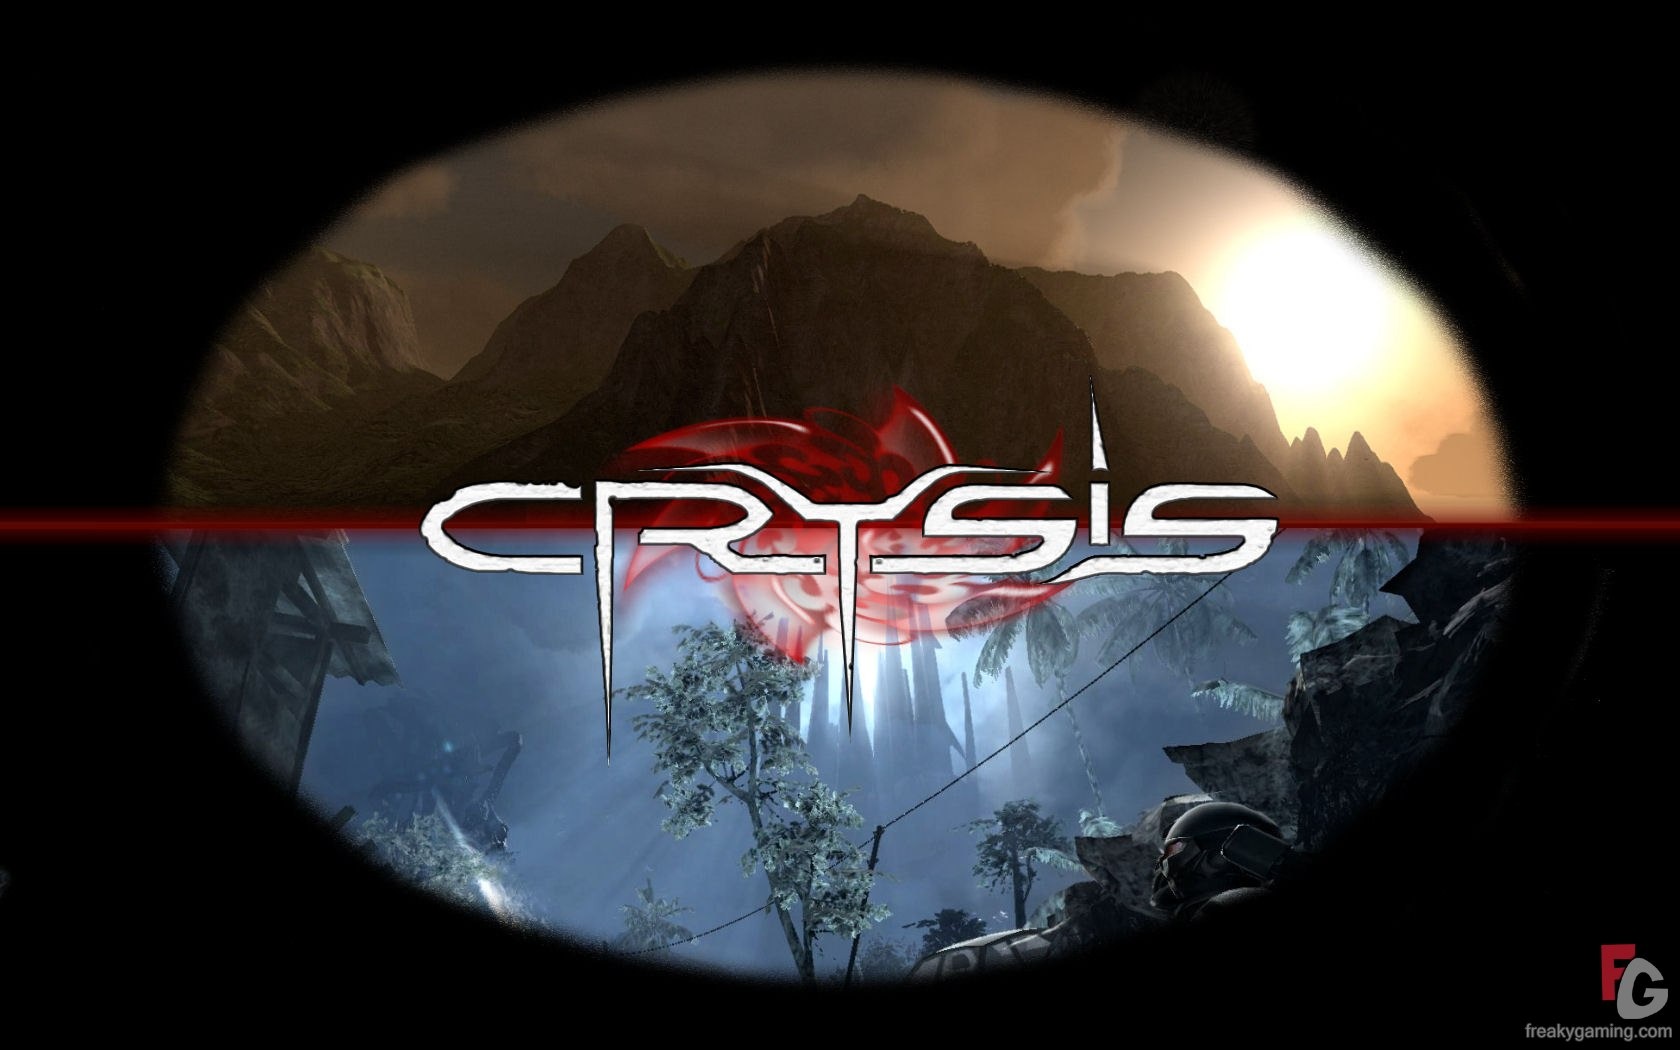  Crysisの壁紙(3) #5 - 1680x1050